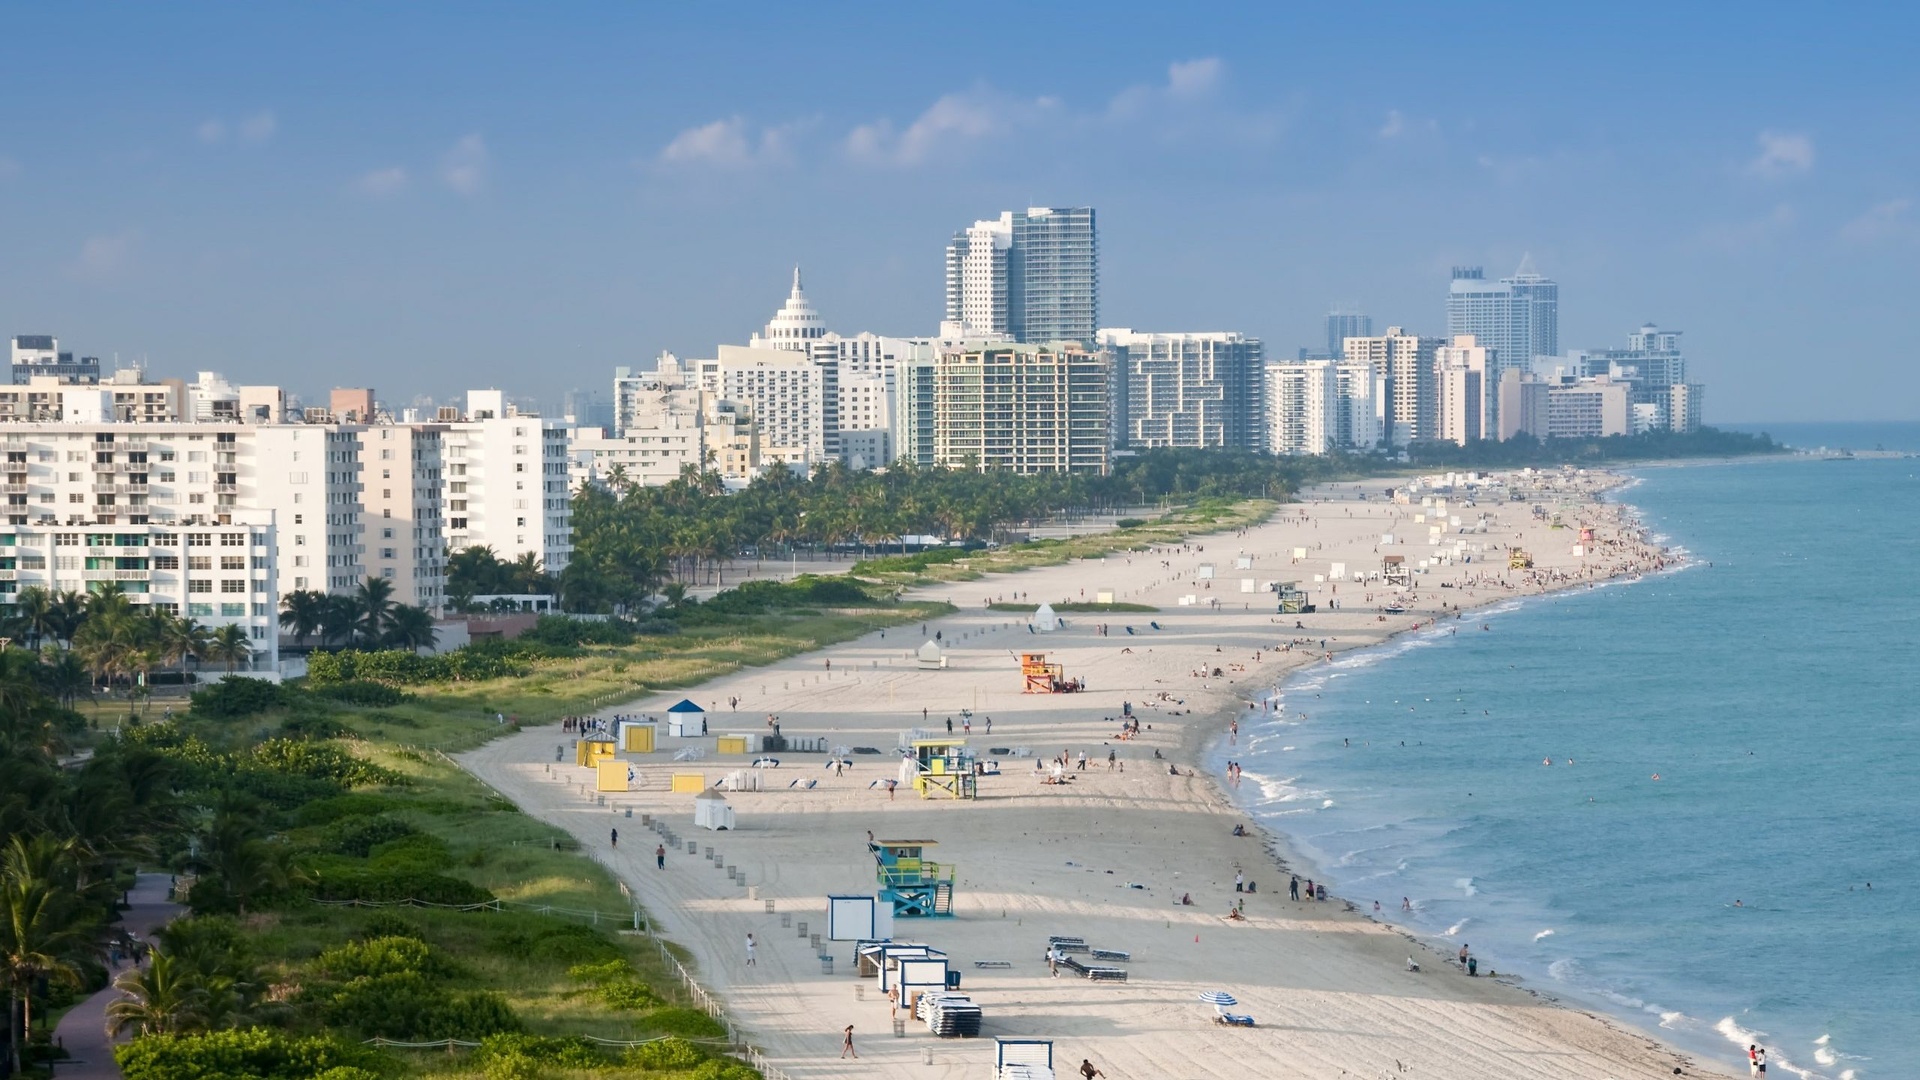 Vue de Miami - plage.jpg